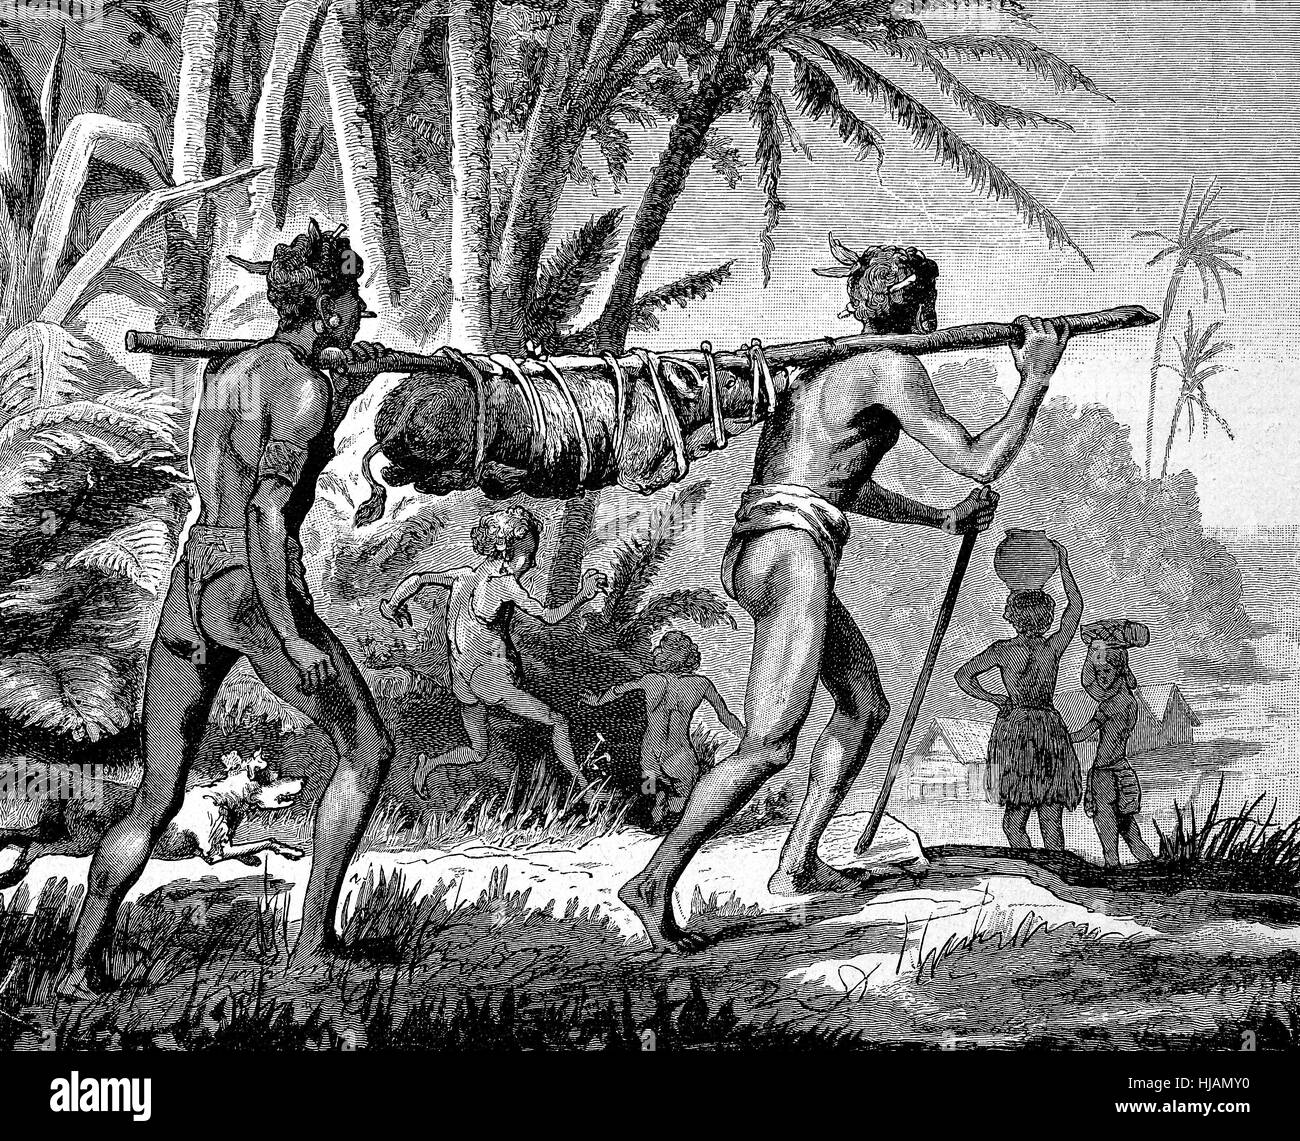 Il trasporto di un maiale vivente, al mercato, in Nuova Guinea, agricoltura, indigeni, immagine storica o illustrazione a partire dall'anno 1894, digitale migliorata Foto Stock